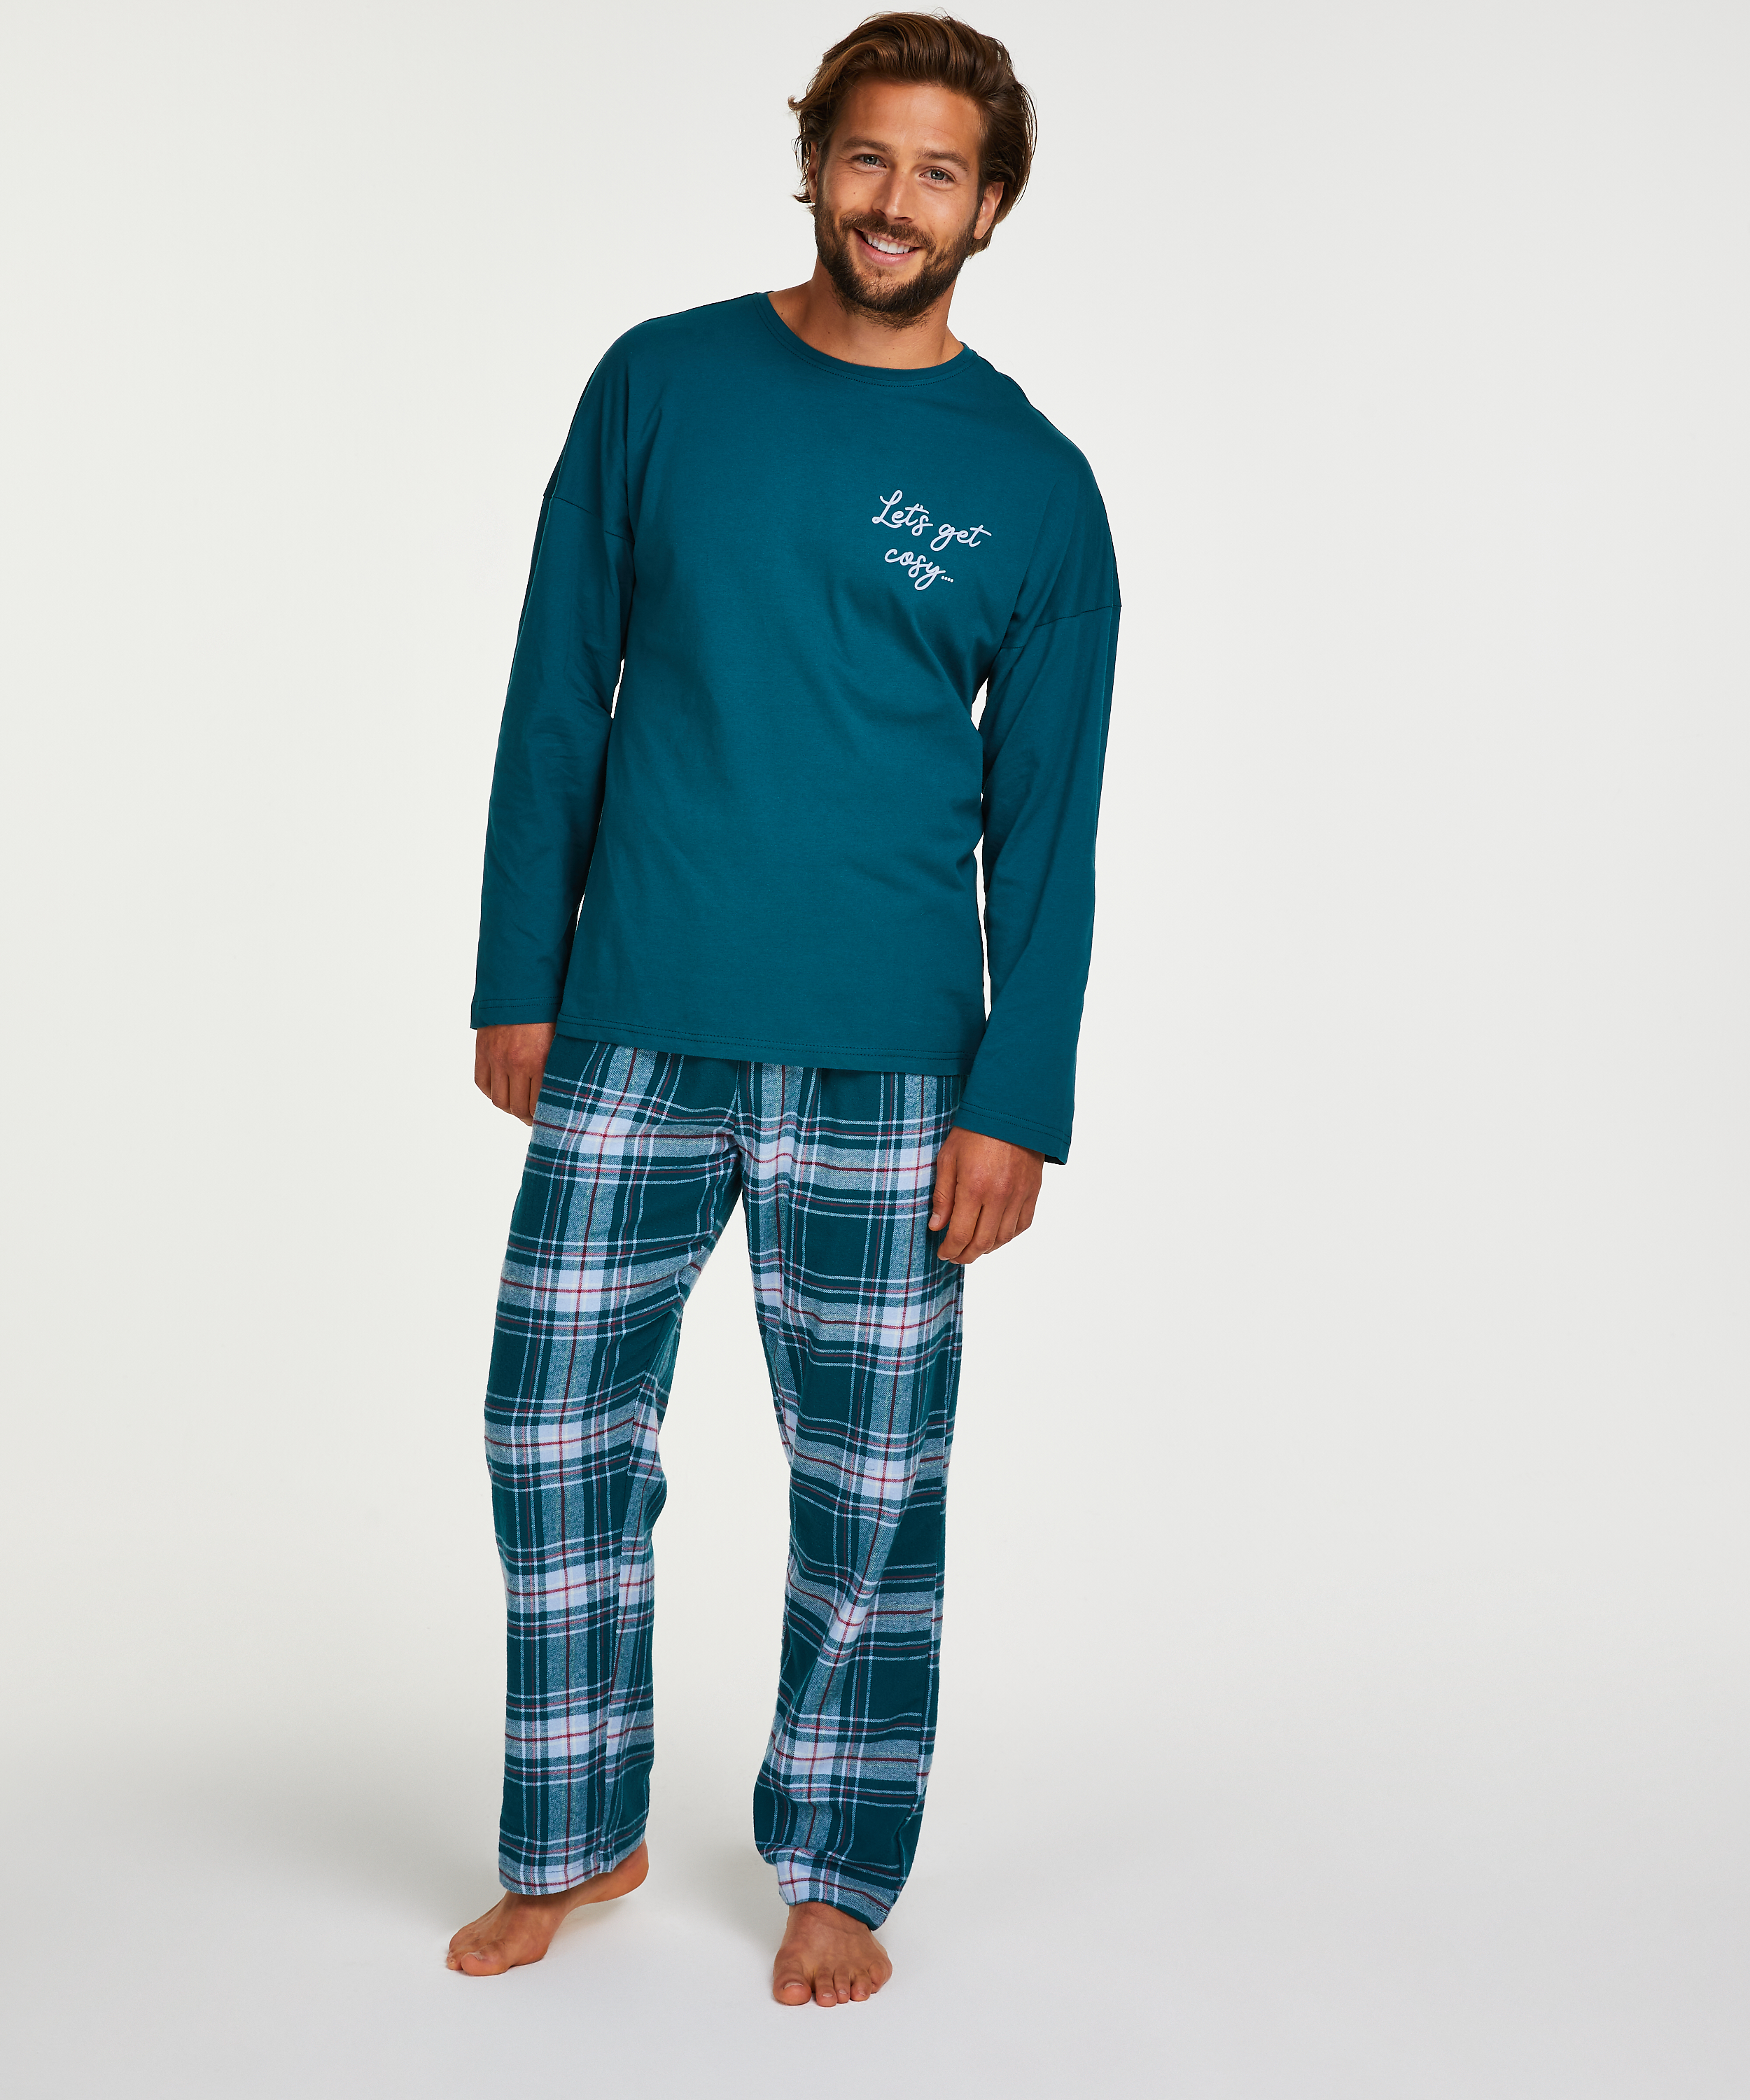 Vervelen Vertrouwelijk hersenen Men's pyjama set for €32.99 - Pajamas - Hunkemöller